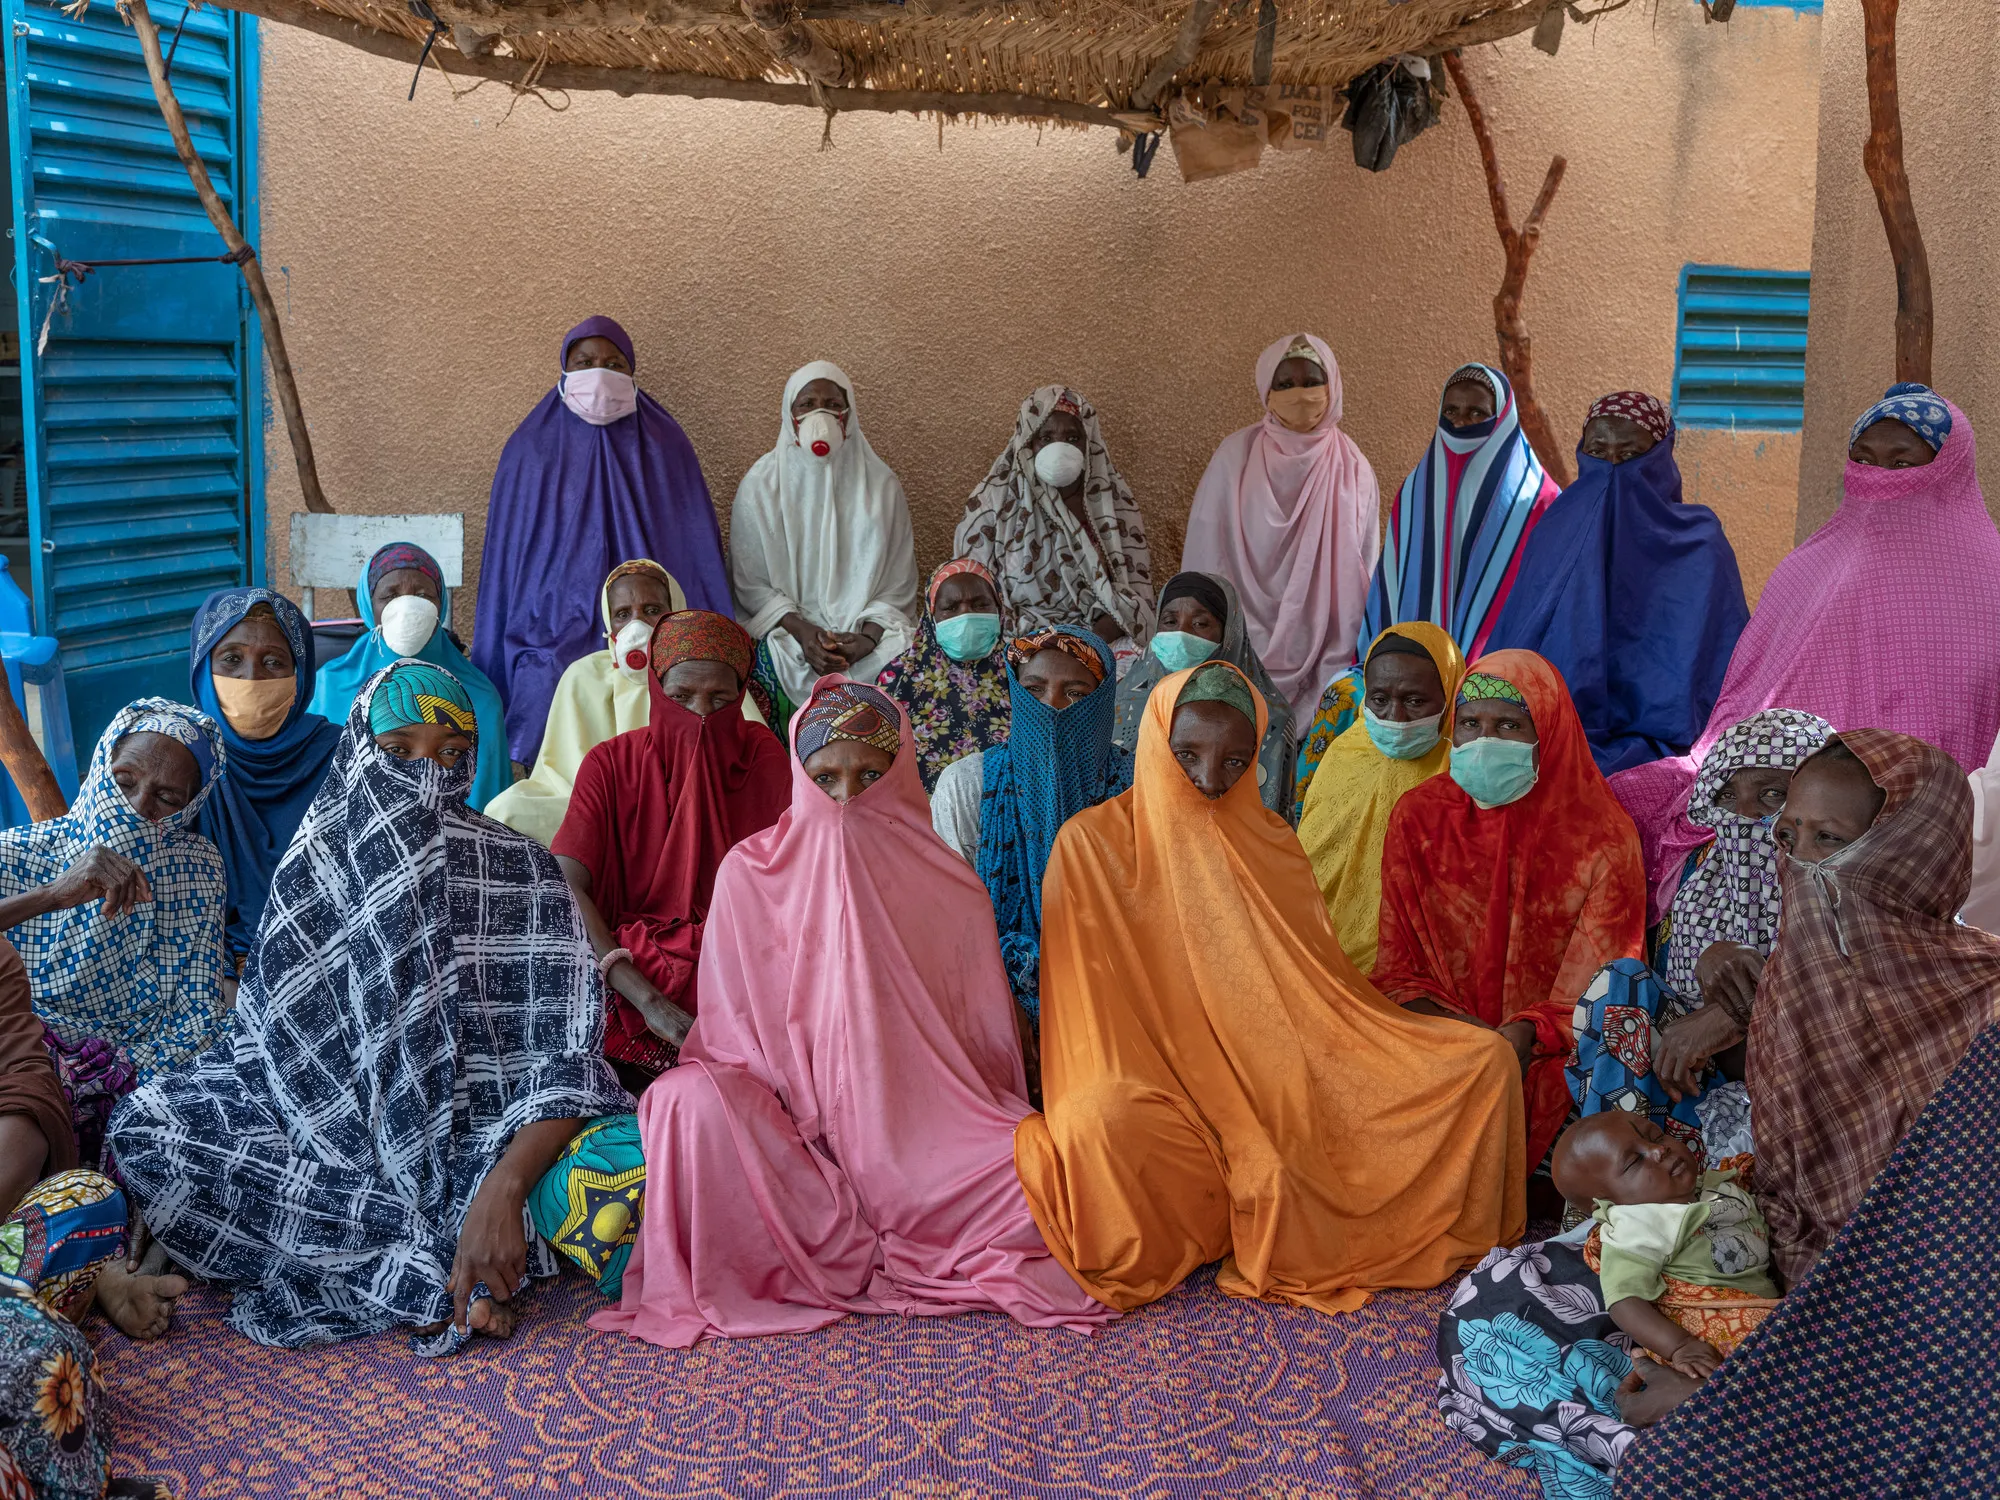 Un groupe de femmes vêtues de robes colorées et de masques faciaux pose en rangées face à l'avant.